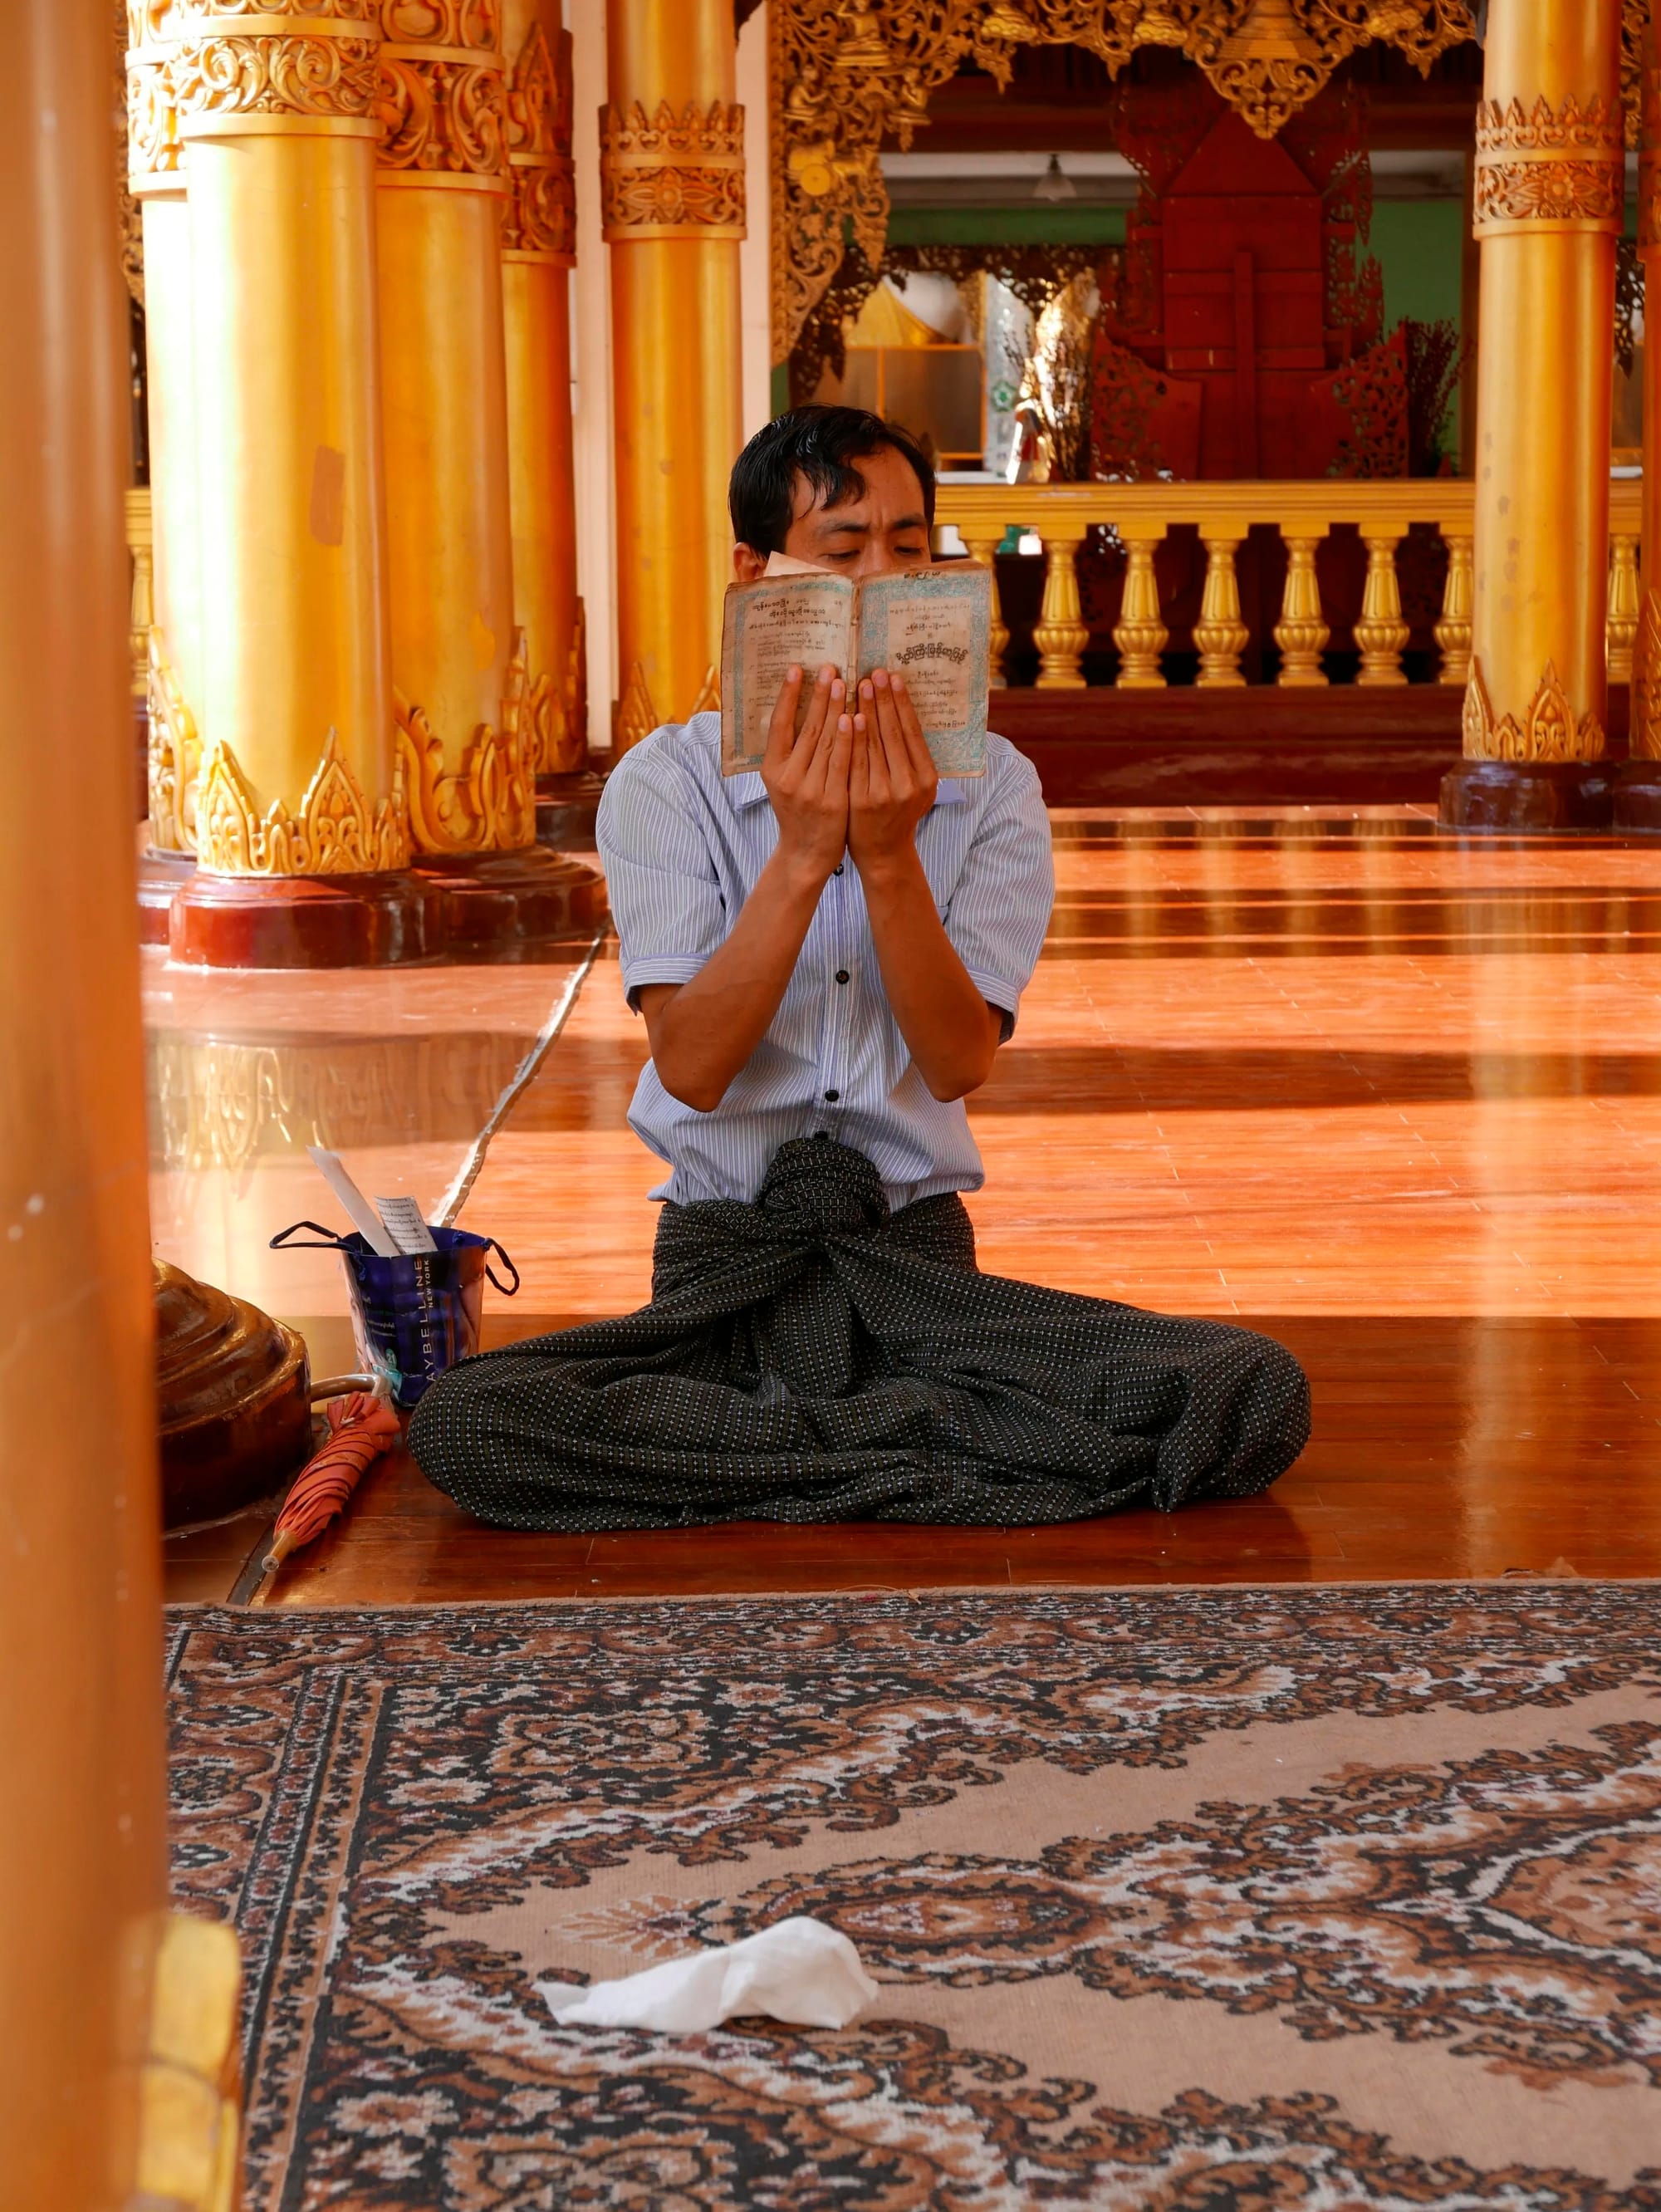 Photo by Author — studying at the Shwedagon Pagoda